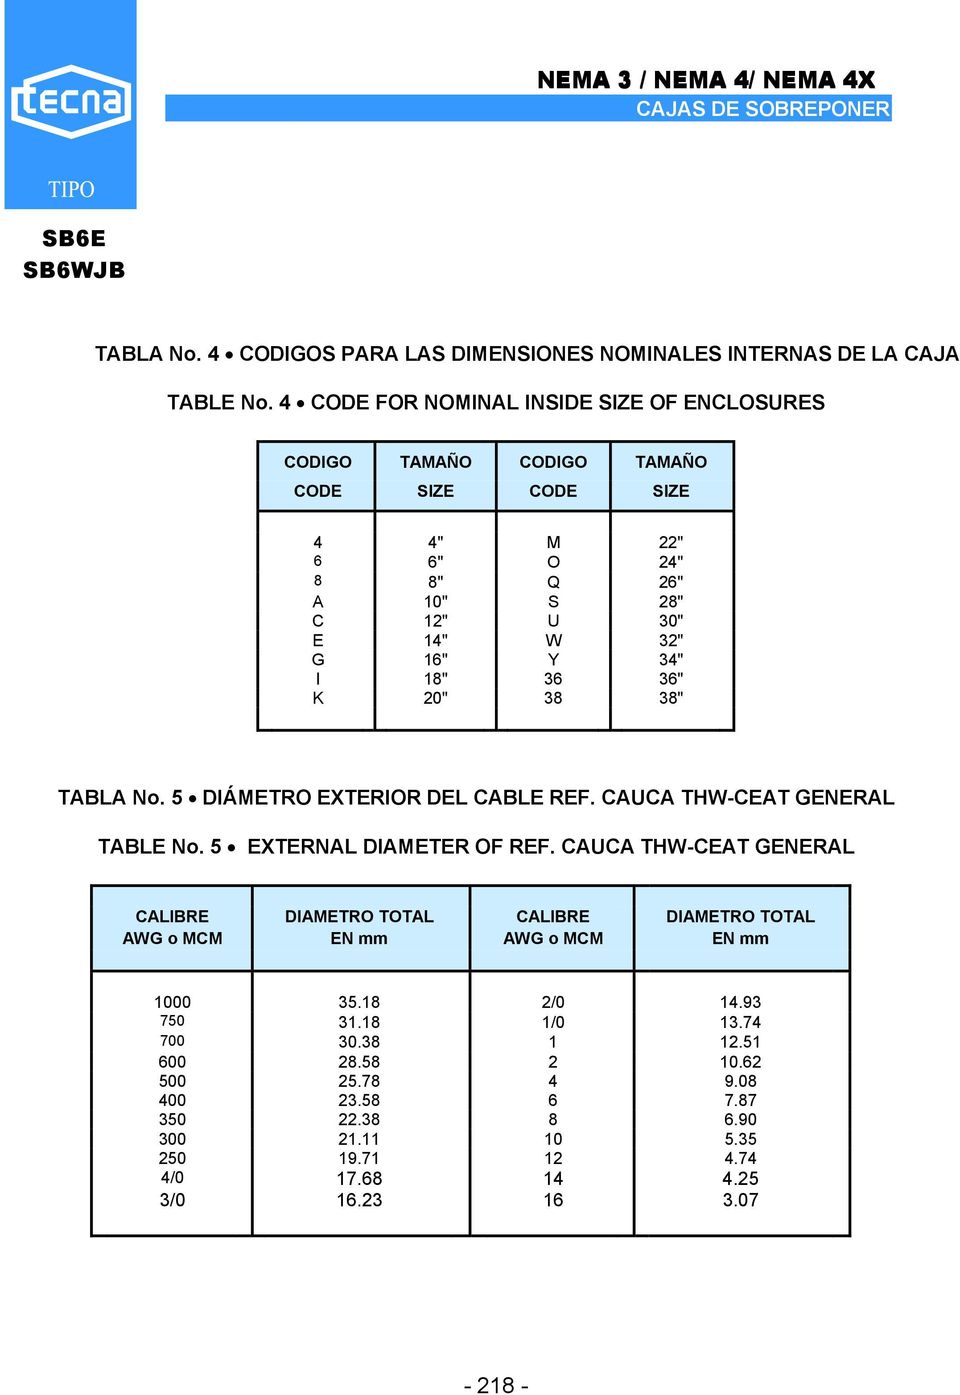 I 18" 36 36" K 20" 38 38" TABLA No. 5 DIÁMETRO EXTERIOR DEL CABLE REF. CAUCA THW-CEAT GENERAL TABLE No. 5 EXTERNAL DIAMETER OF REF.